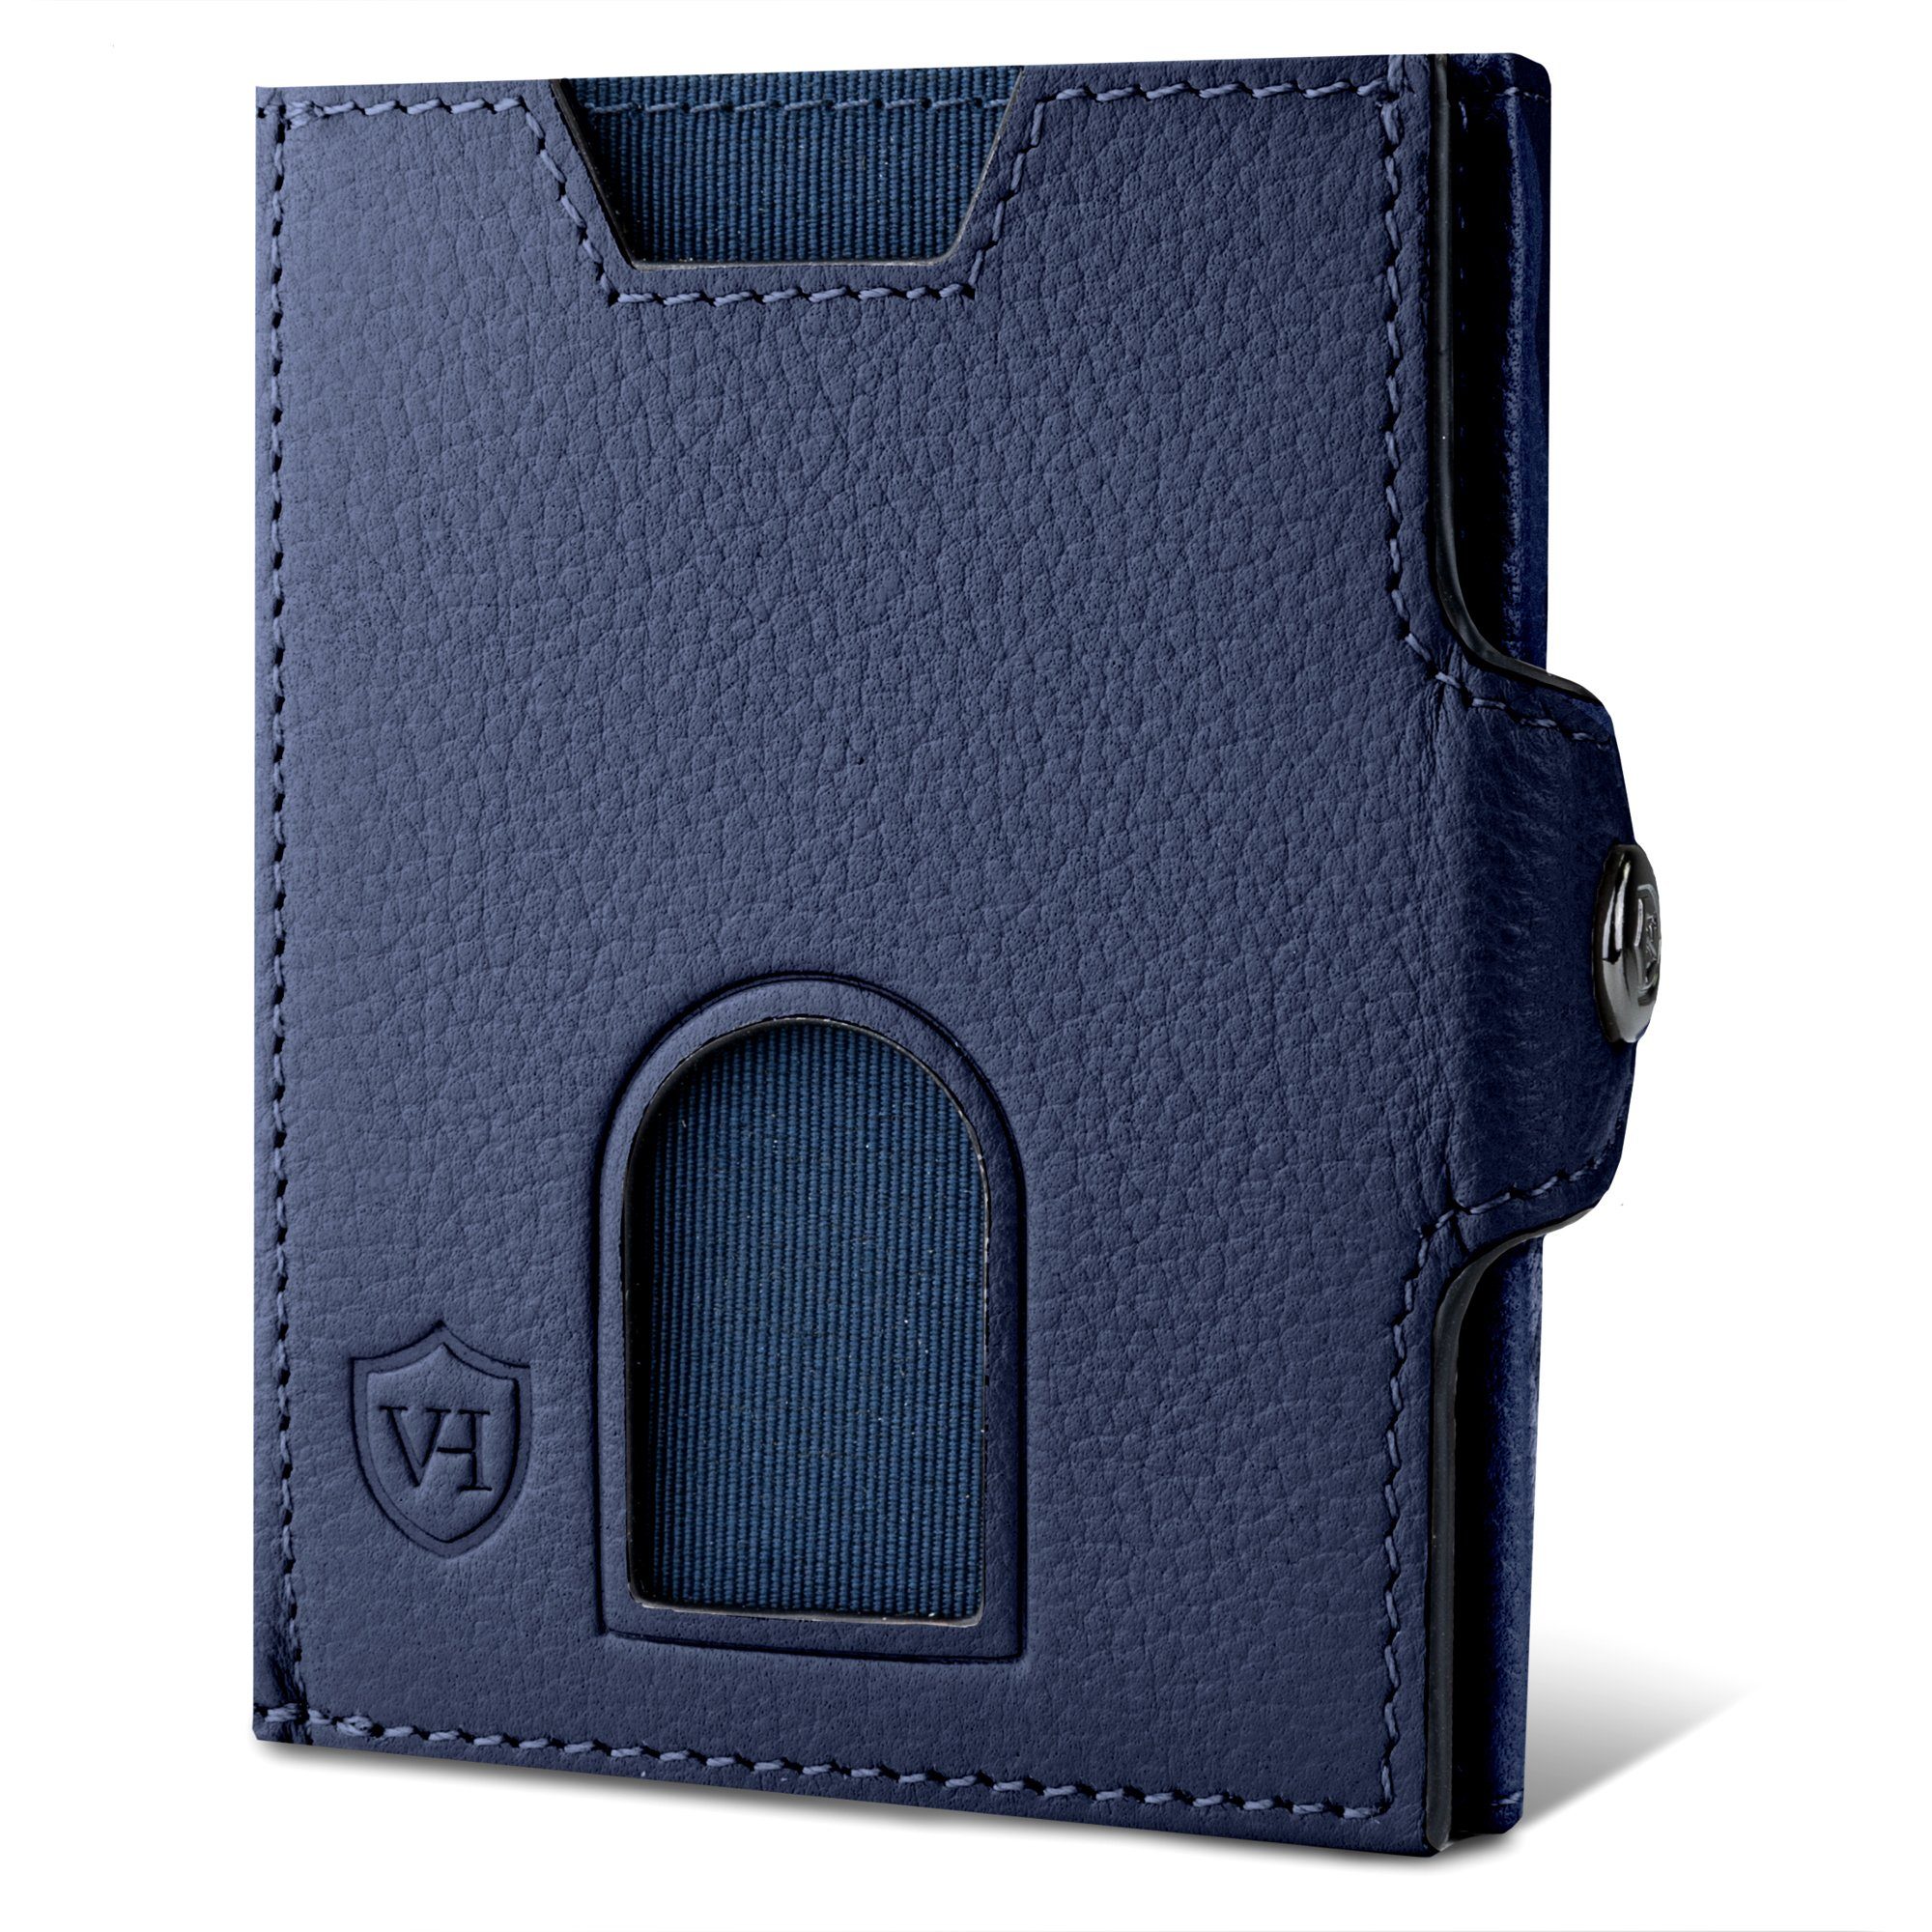 VON HEESEN Geldbörse Whizz Wallet mit 6 Kartenfächer, Slim Wallet Geldbeutel Portemonnaie inkl. RFID-Schutz & Geschenkbox Blau